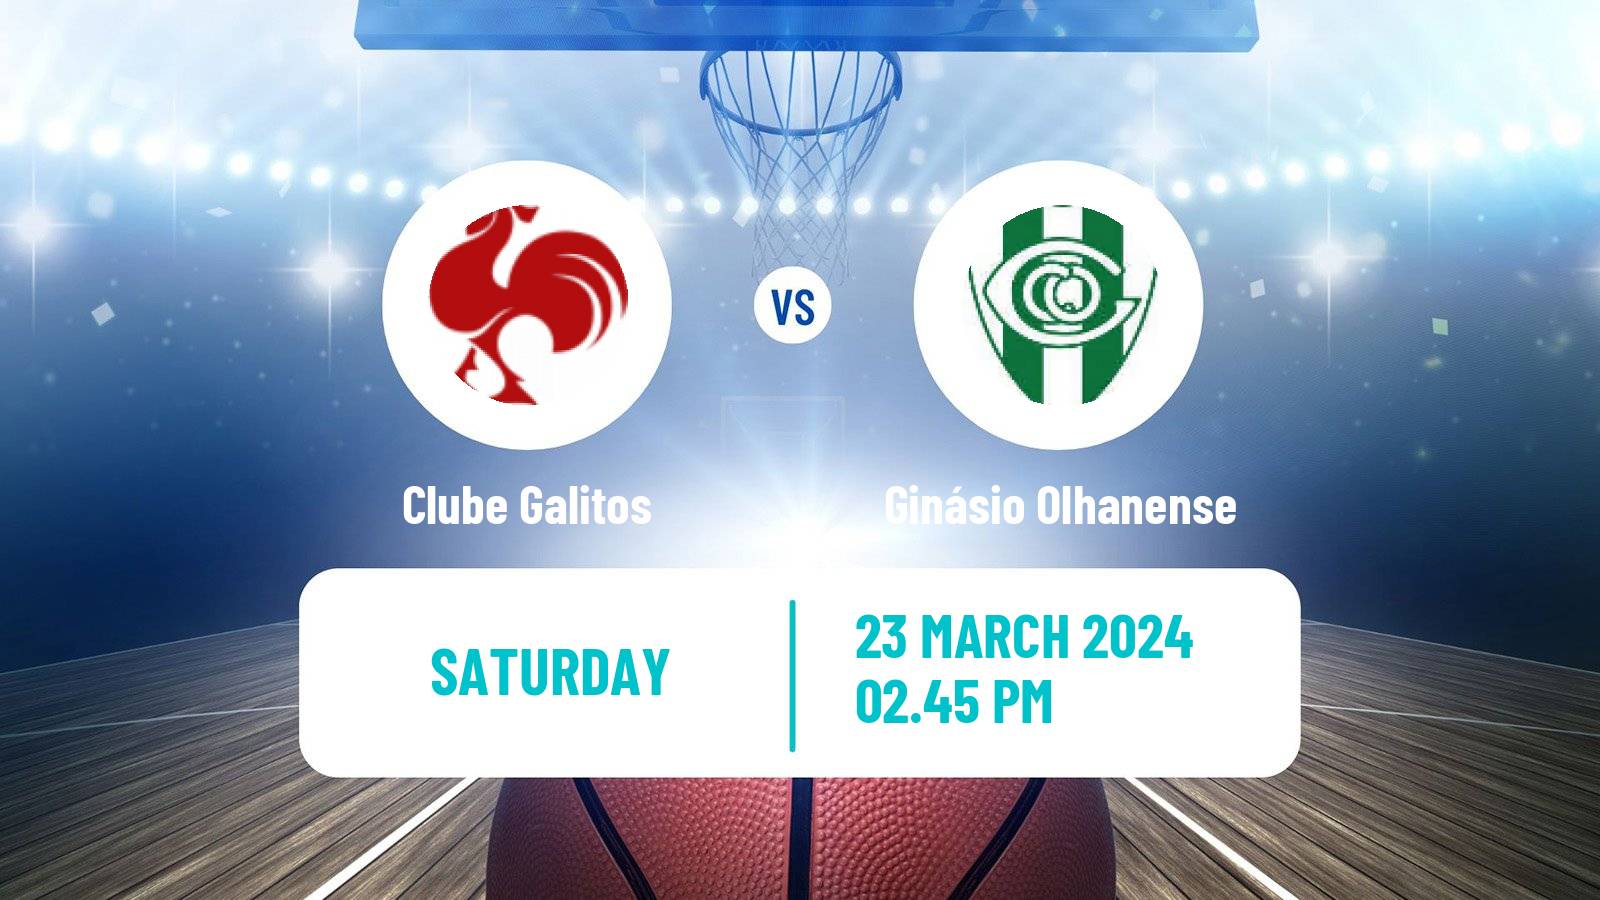 Basketball Portuguese Proliga Basketball Clube Galitos - Ginásio Olhanense